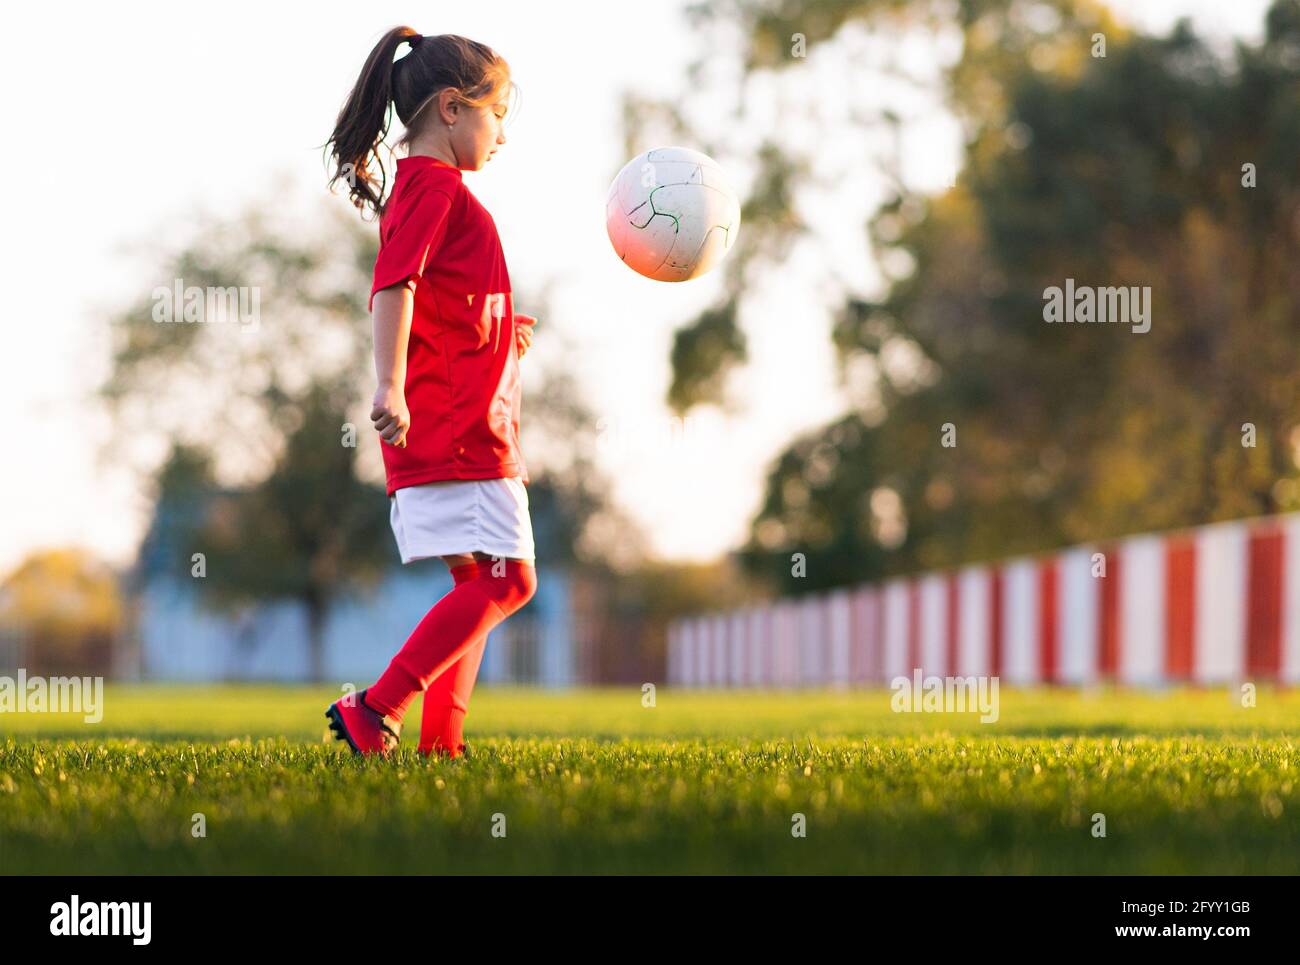 Mädchen kicks einen Fußball auf einem Fußballfeld Stockfoto